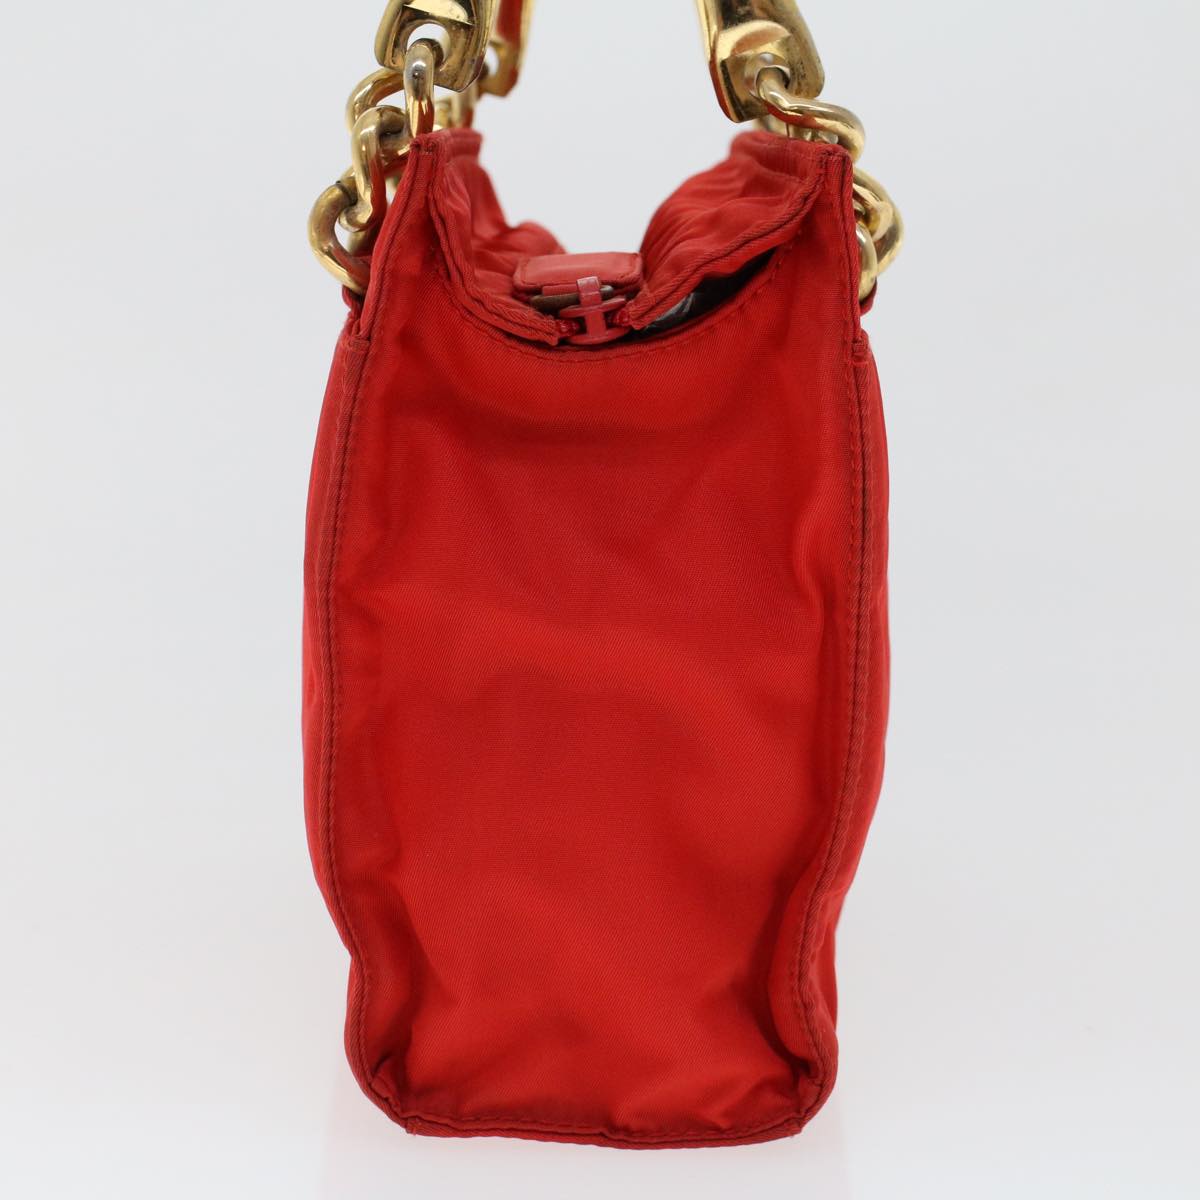 PRADA Hand Bag Nylon Red Auth yk7429